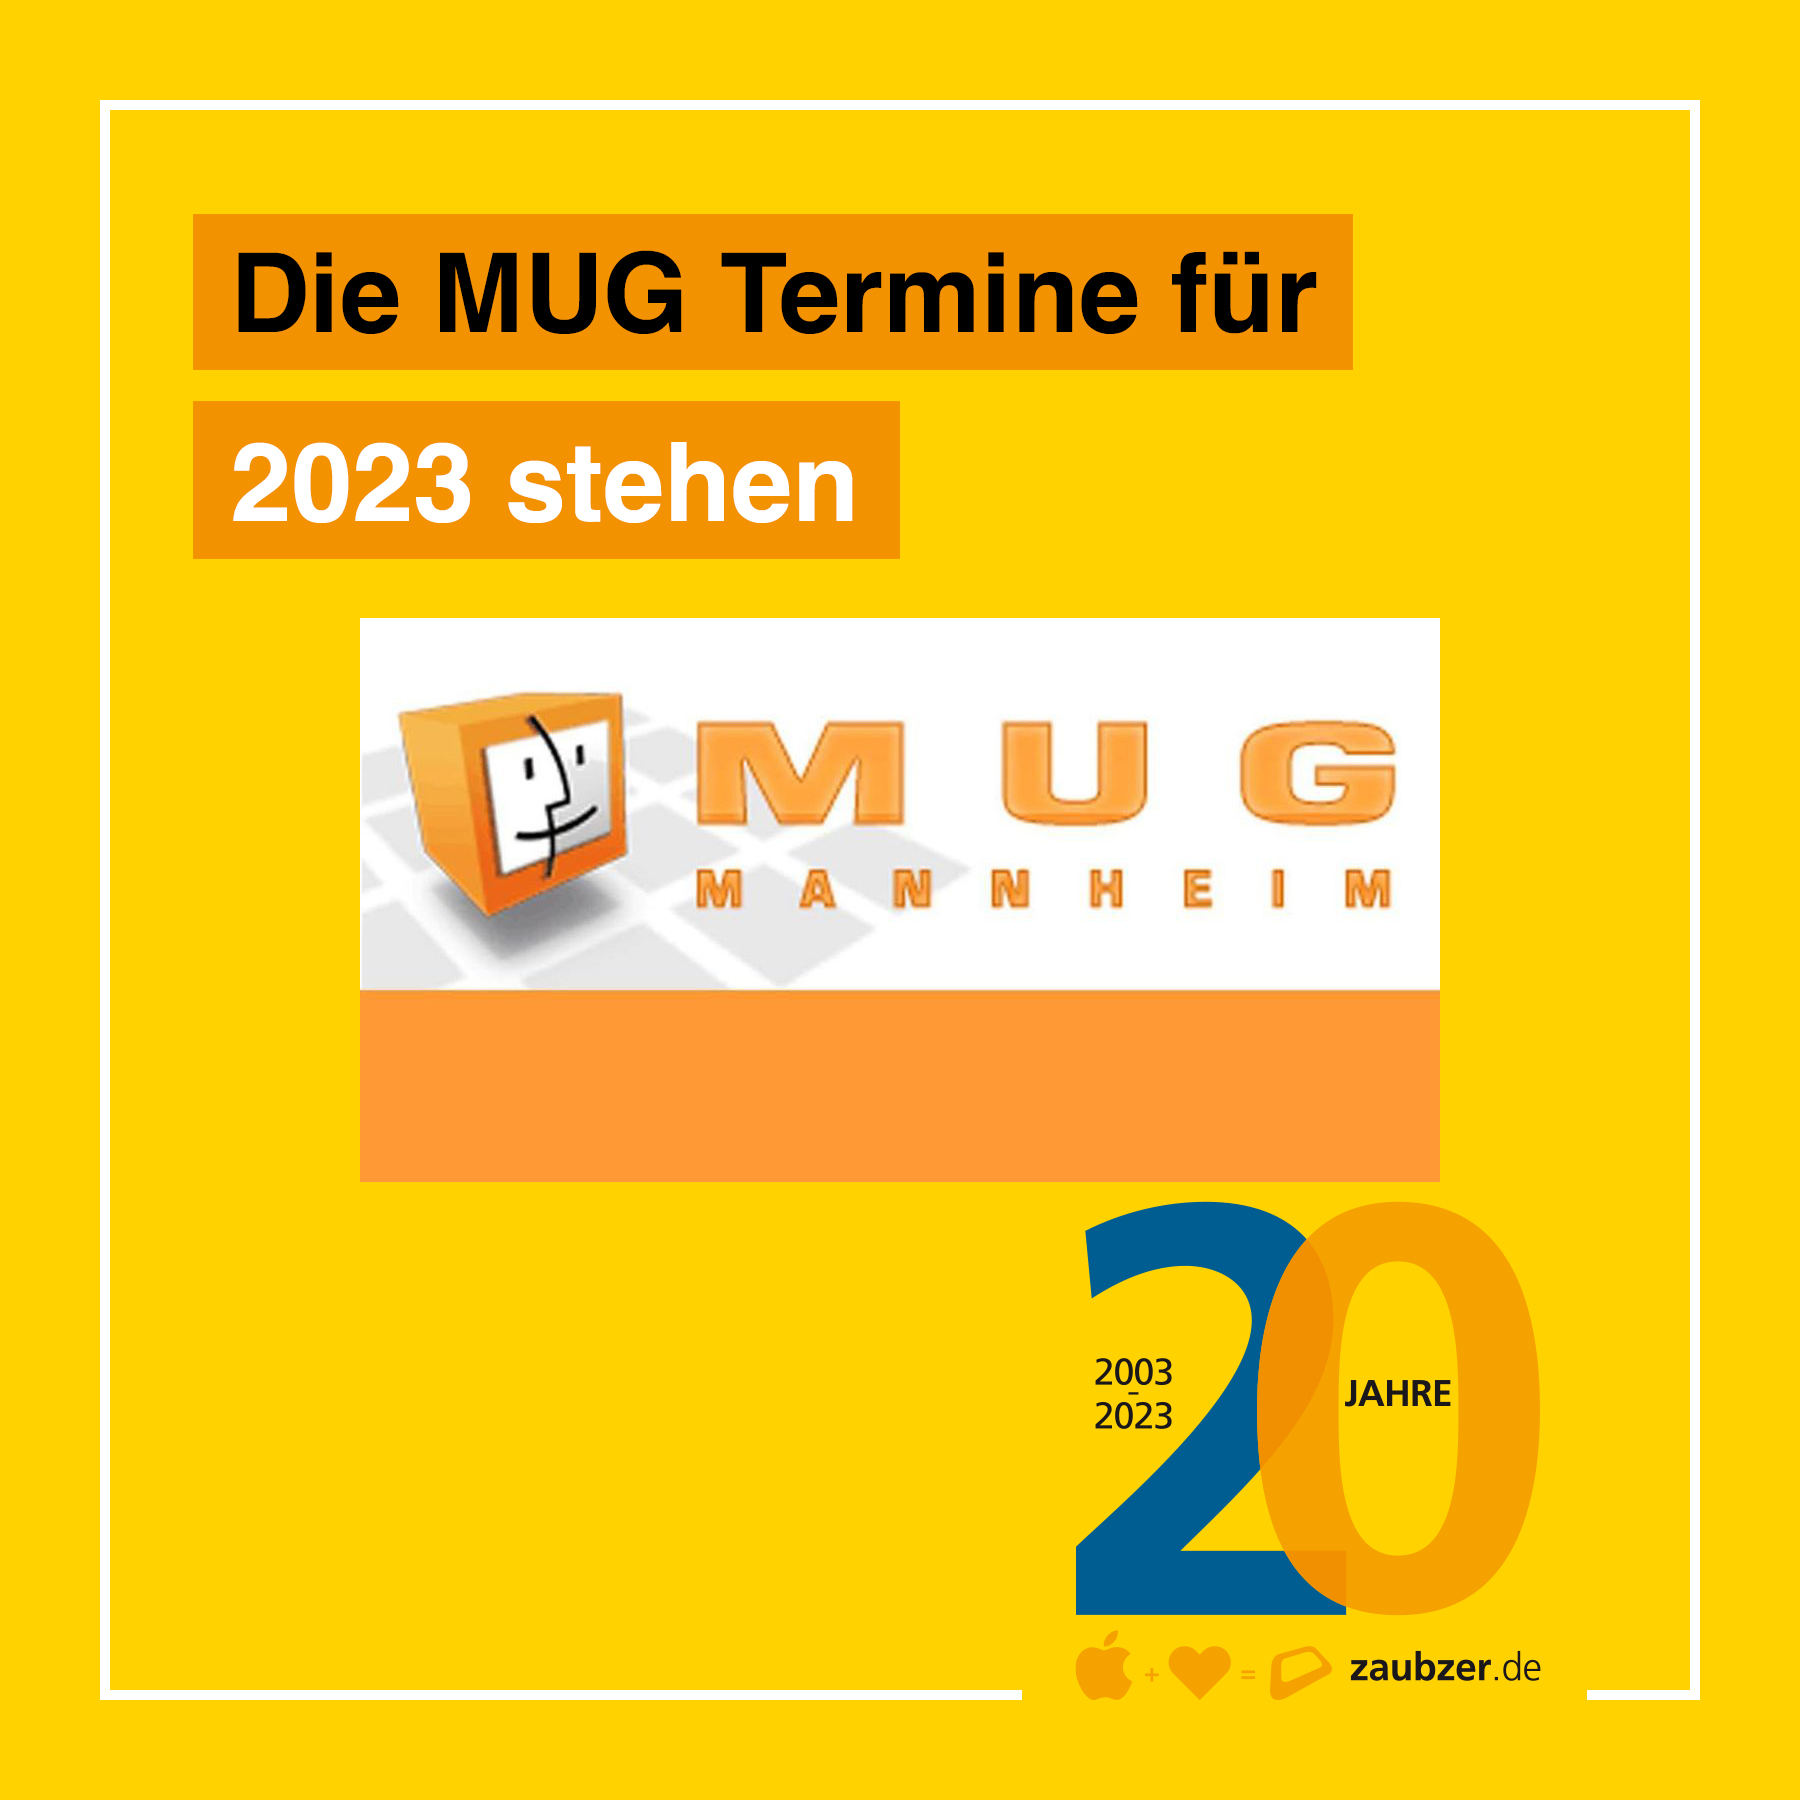 MUG Mannheim/zaubzer.de